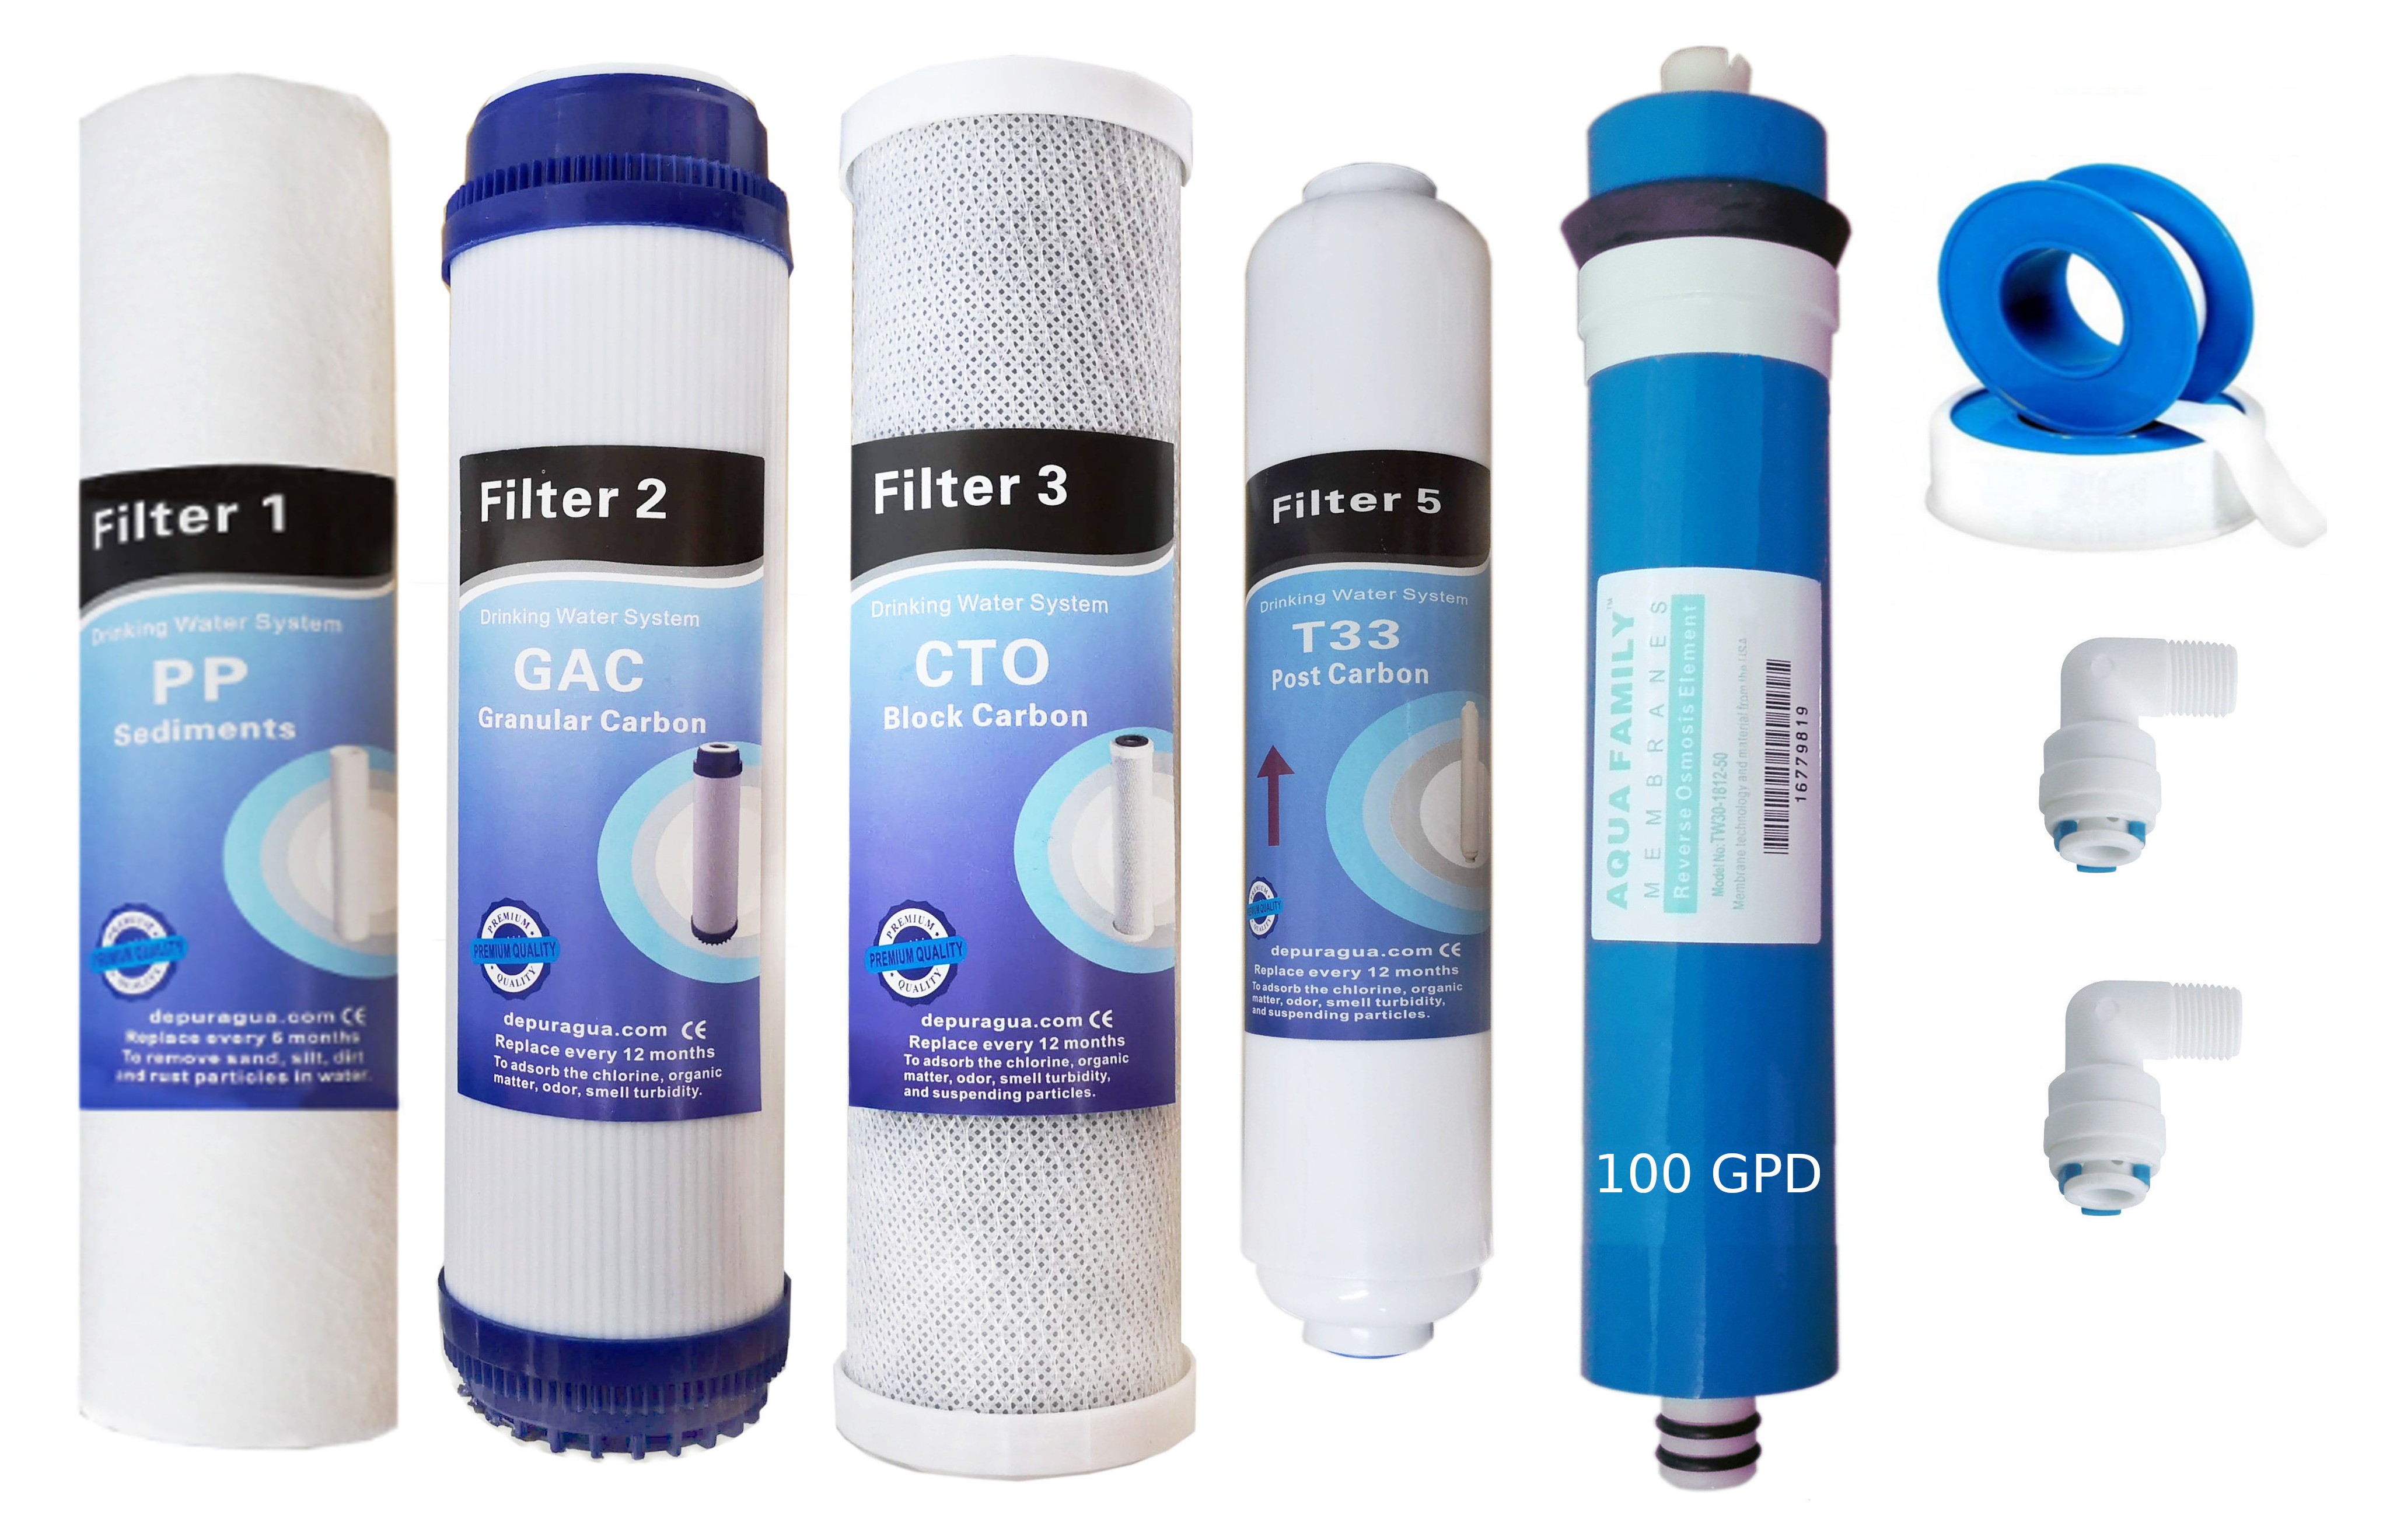 Ricambi osmosi inversa filtri e membrana 100 GPD - WWW.